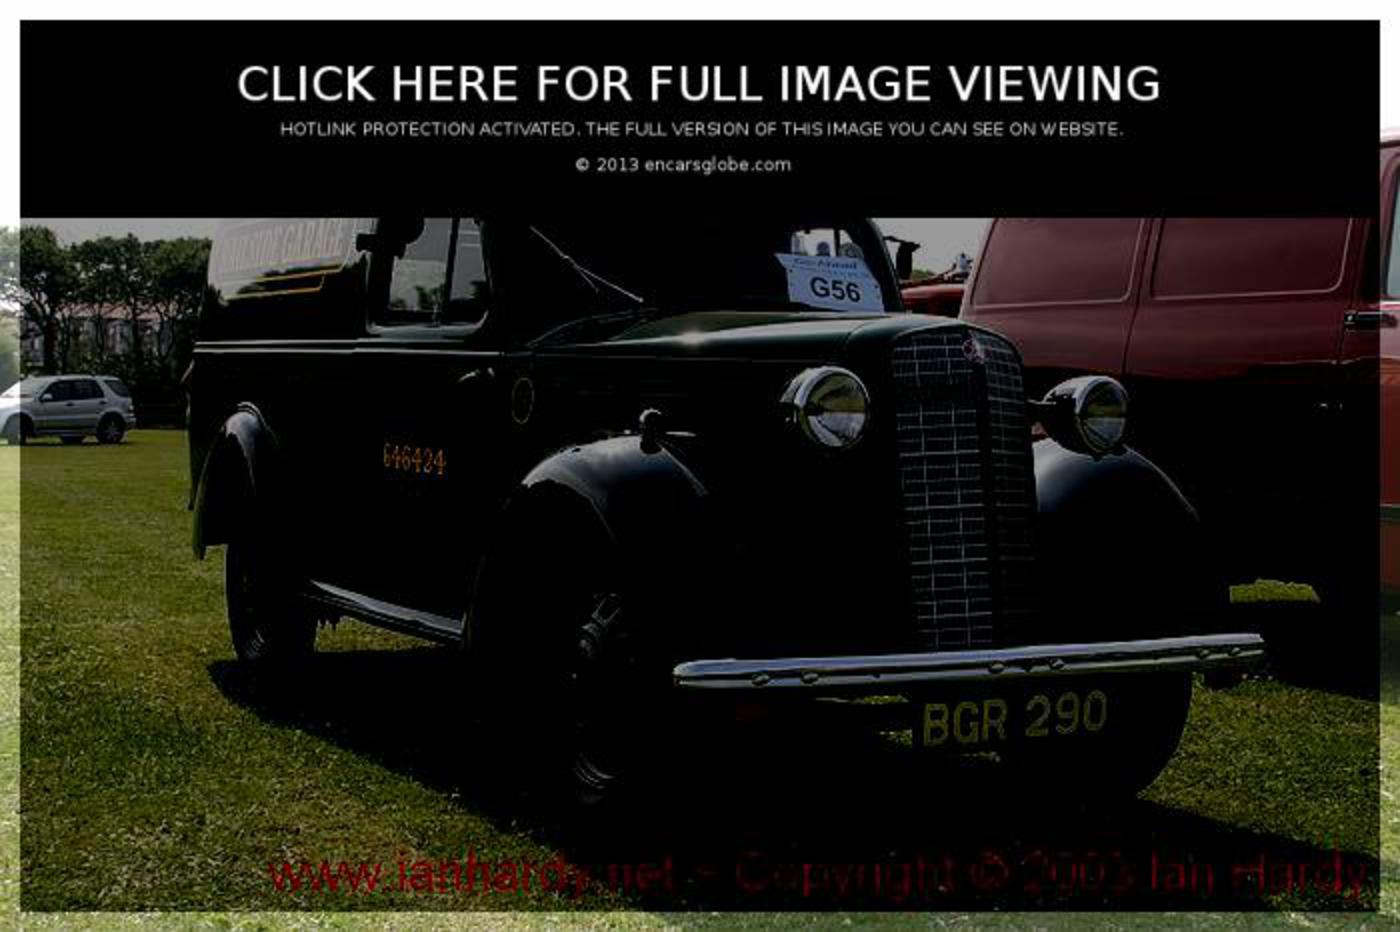 Bedford PC: Galerie de photos, informations complètes sur le modèle...